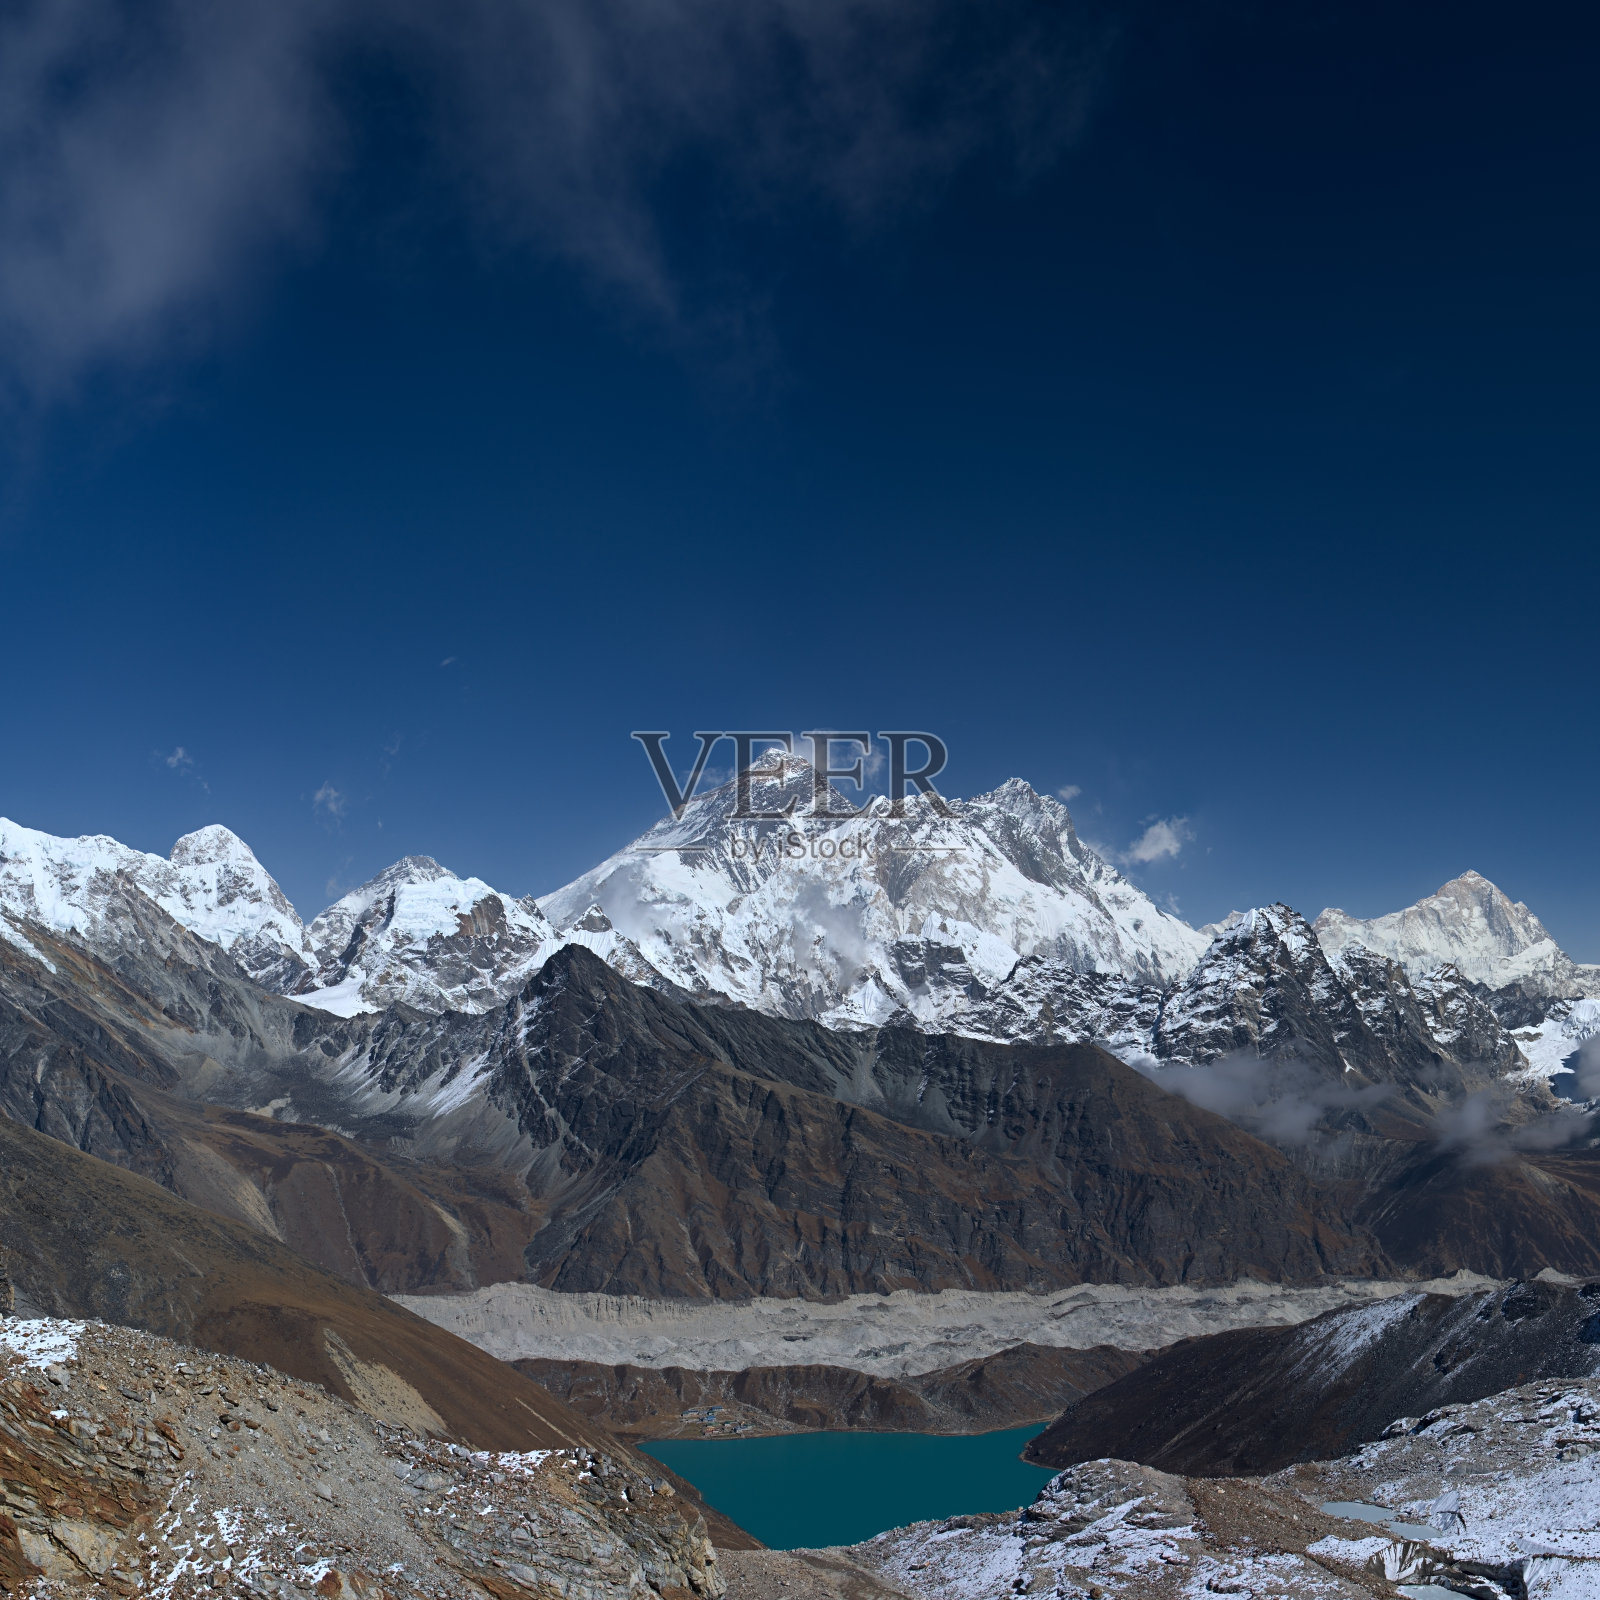 世界之巅——珠穆朗玛峰照片摄影图片